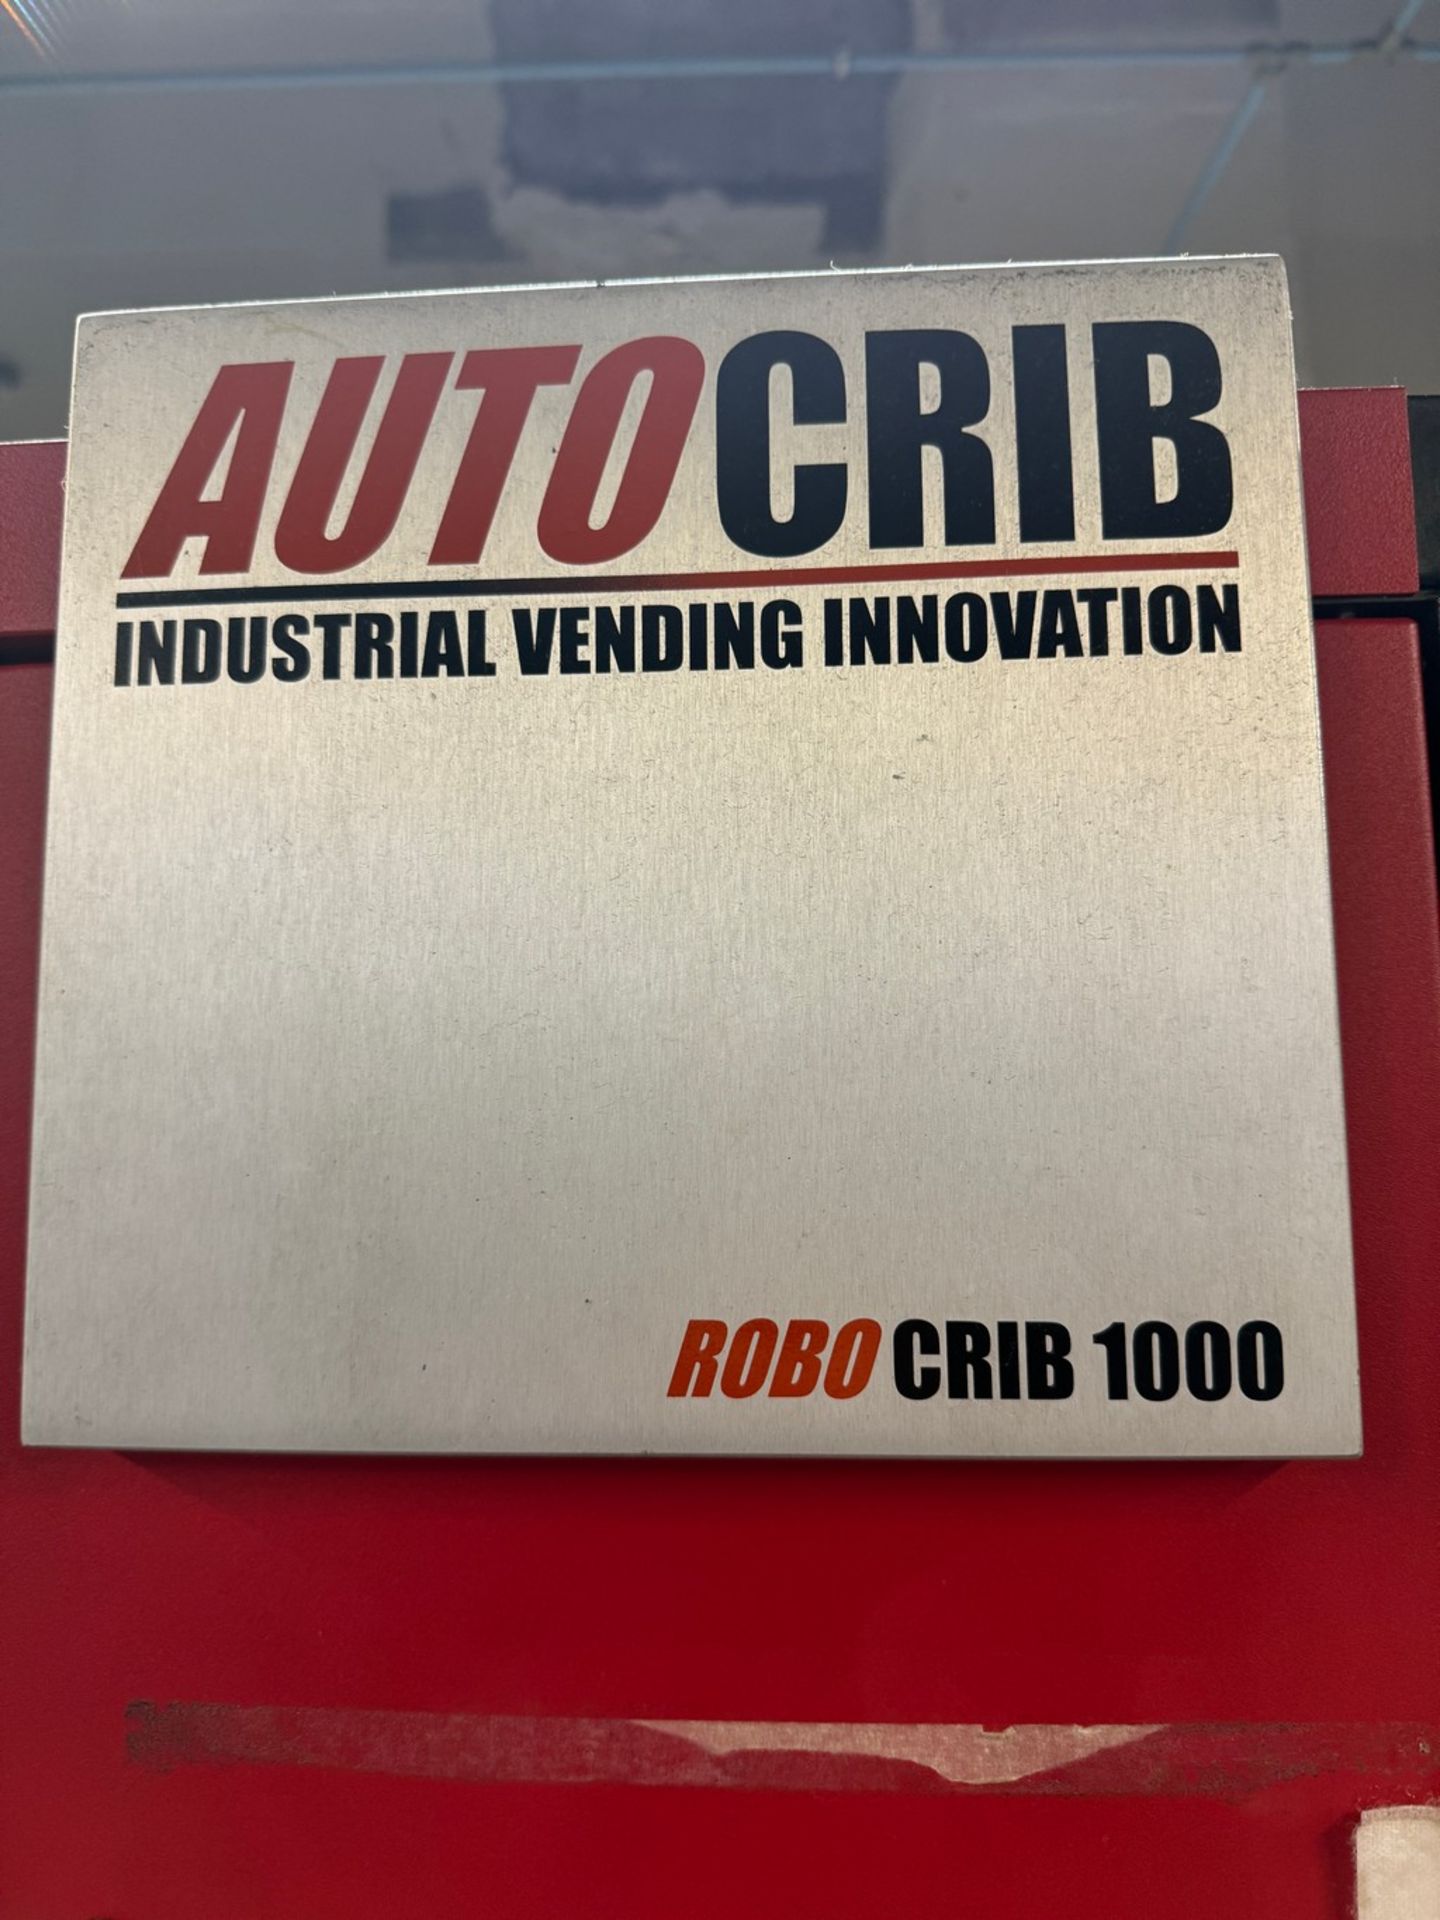 AutoCrib RoboCrib 1000 Industrial Tool Dispensing Machine - Image 4 of 5